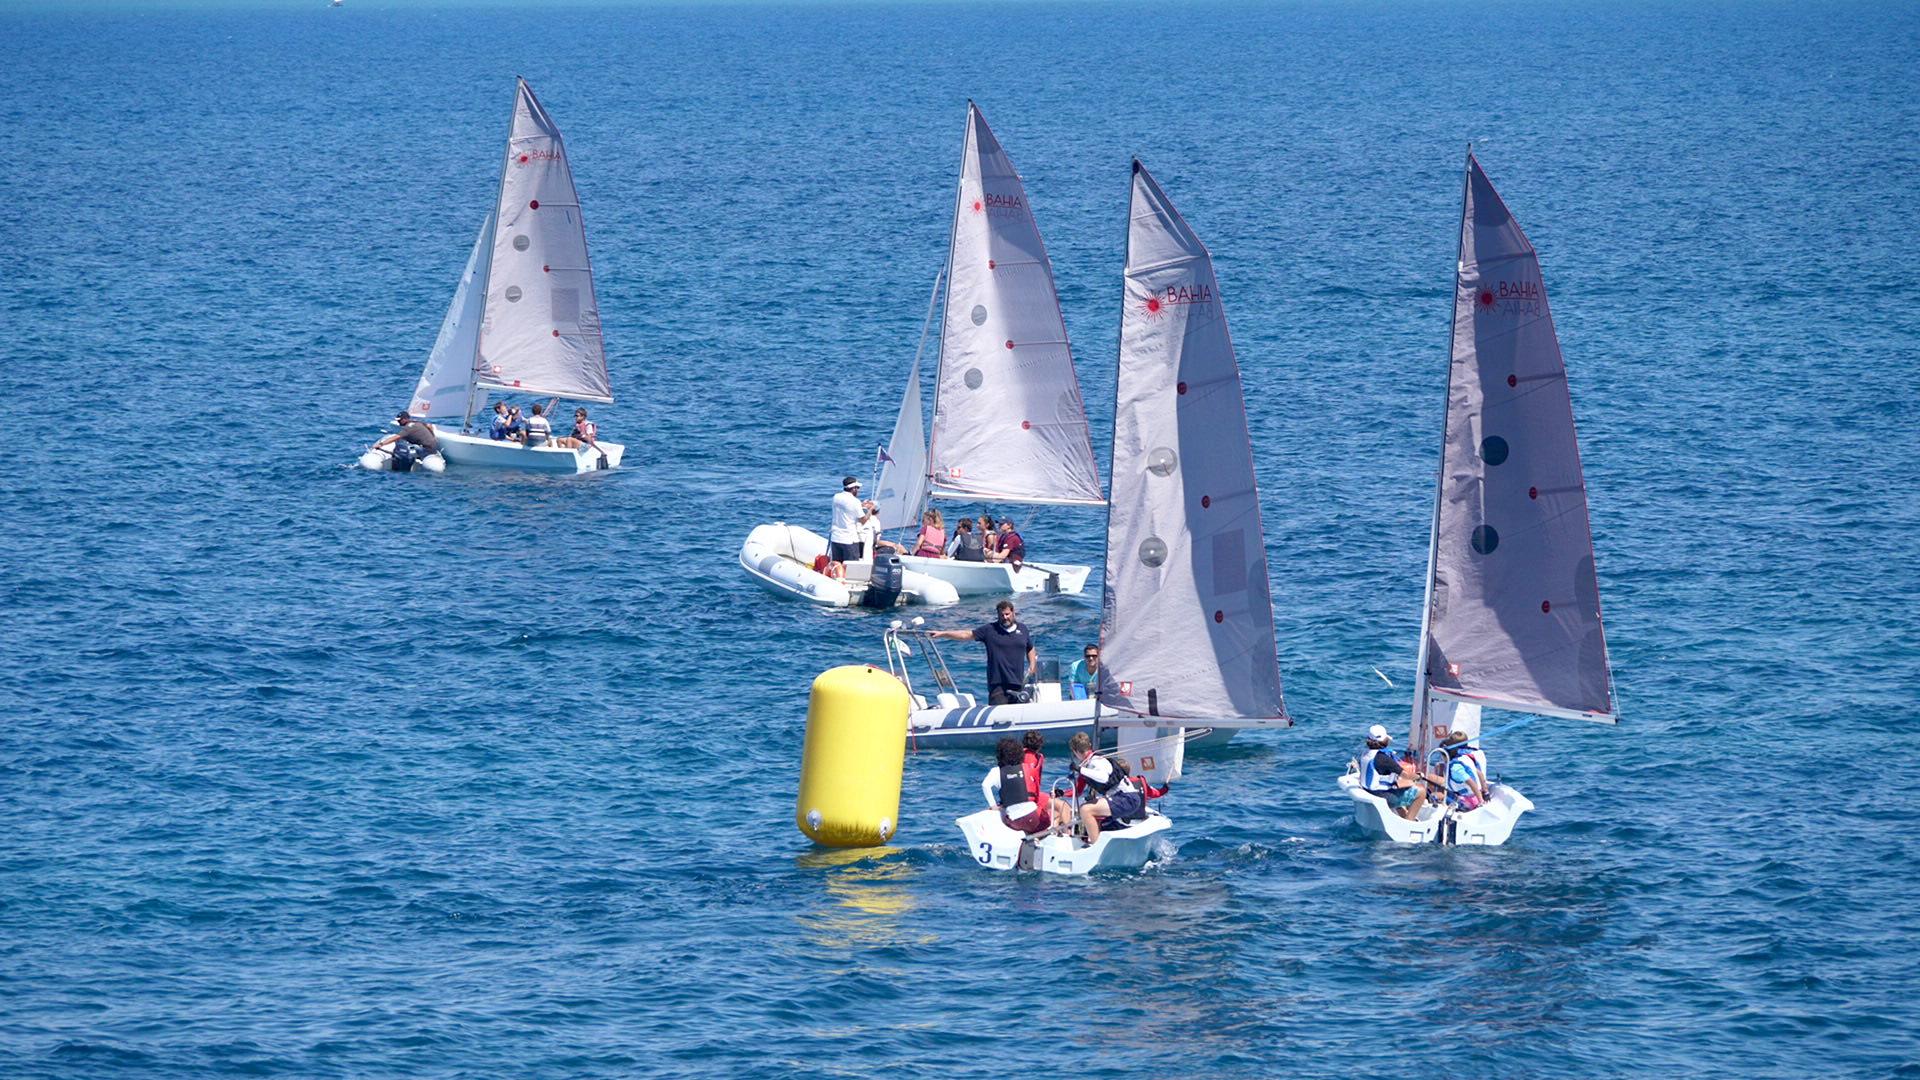 Trofeo Gianni Poma e Invitational Sailing School tre giorni di regate full time per lo Yacht Club Santo Stefano